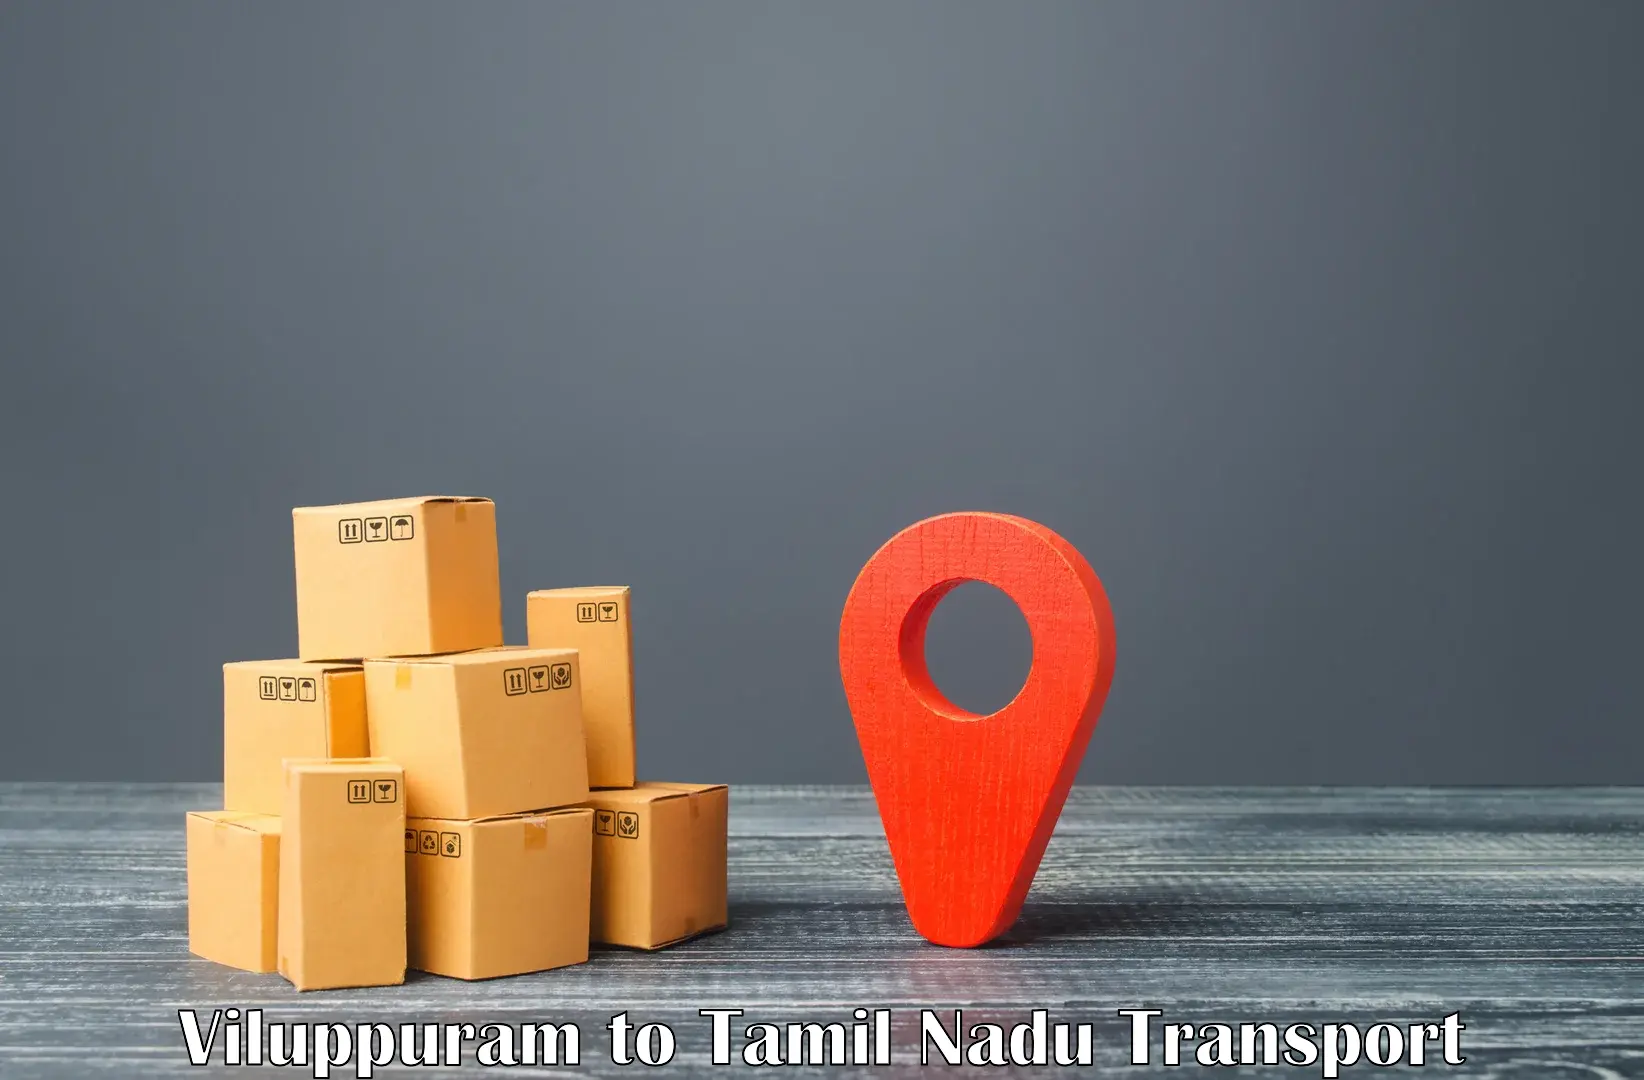 Land transport services Viluppuram to Tiruturaipundi